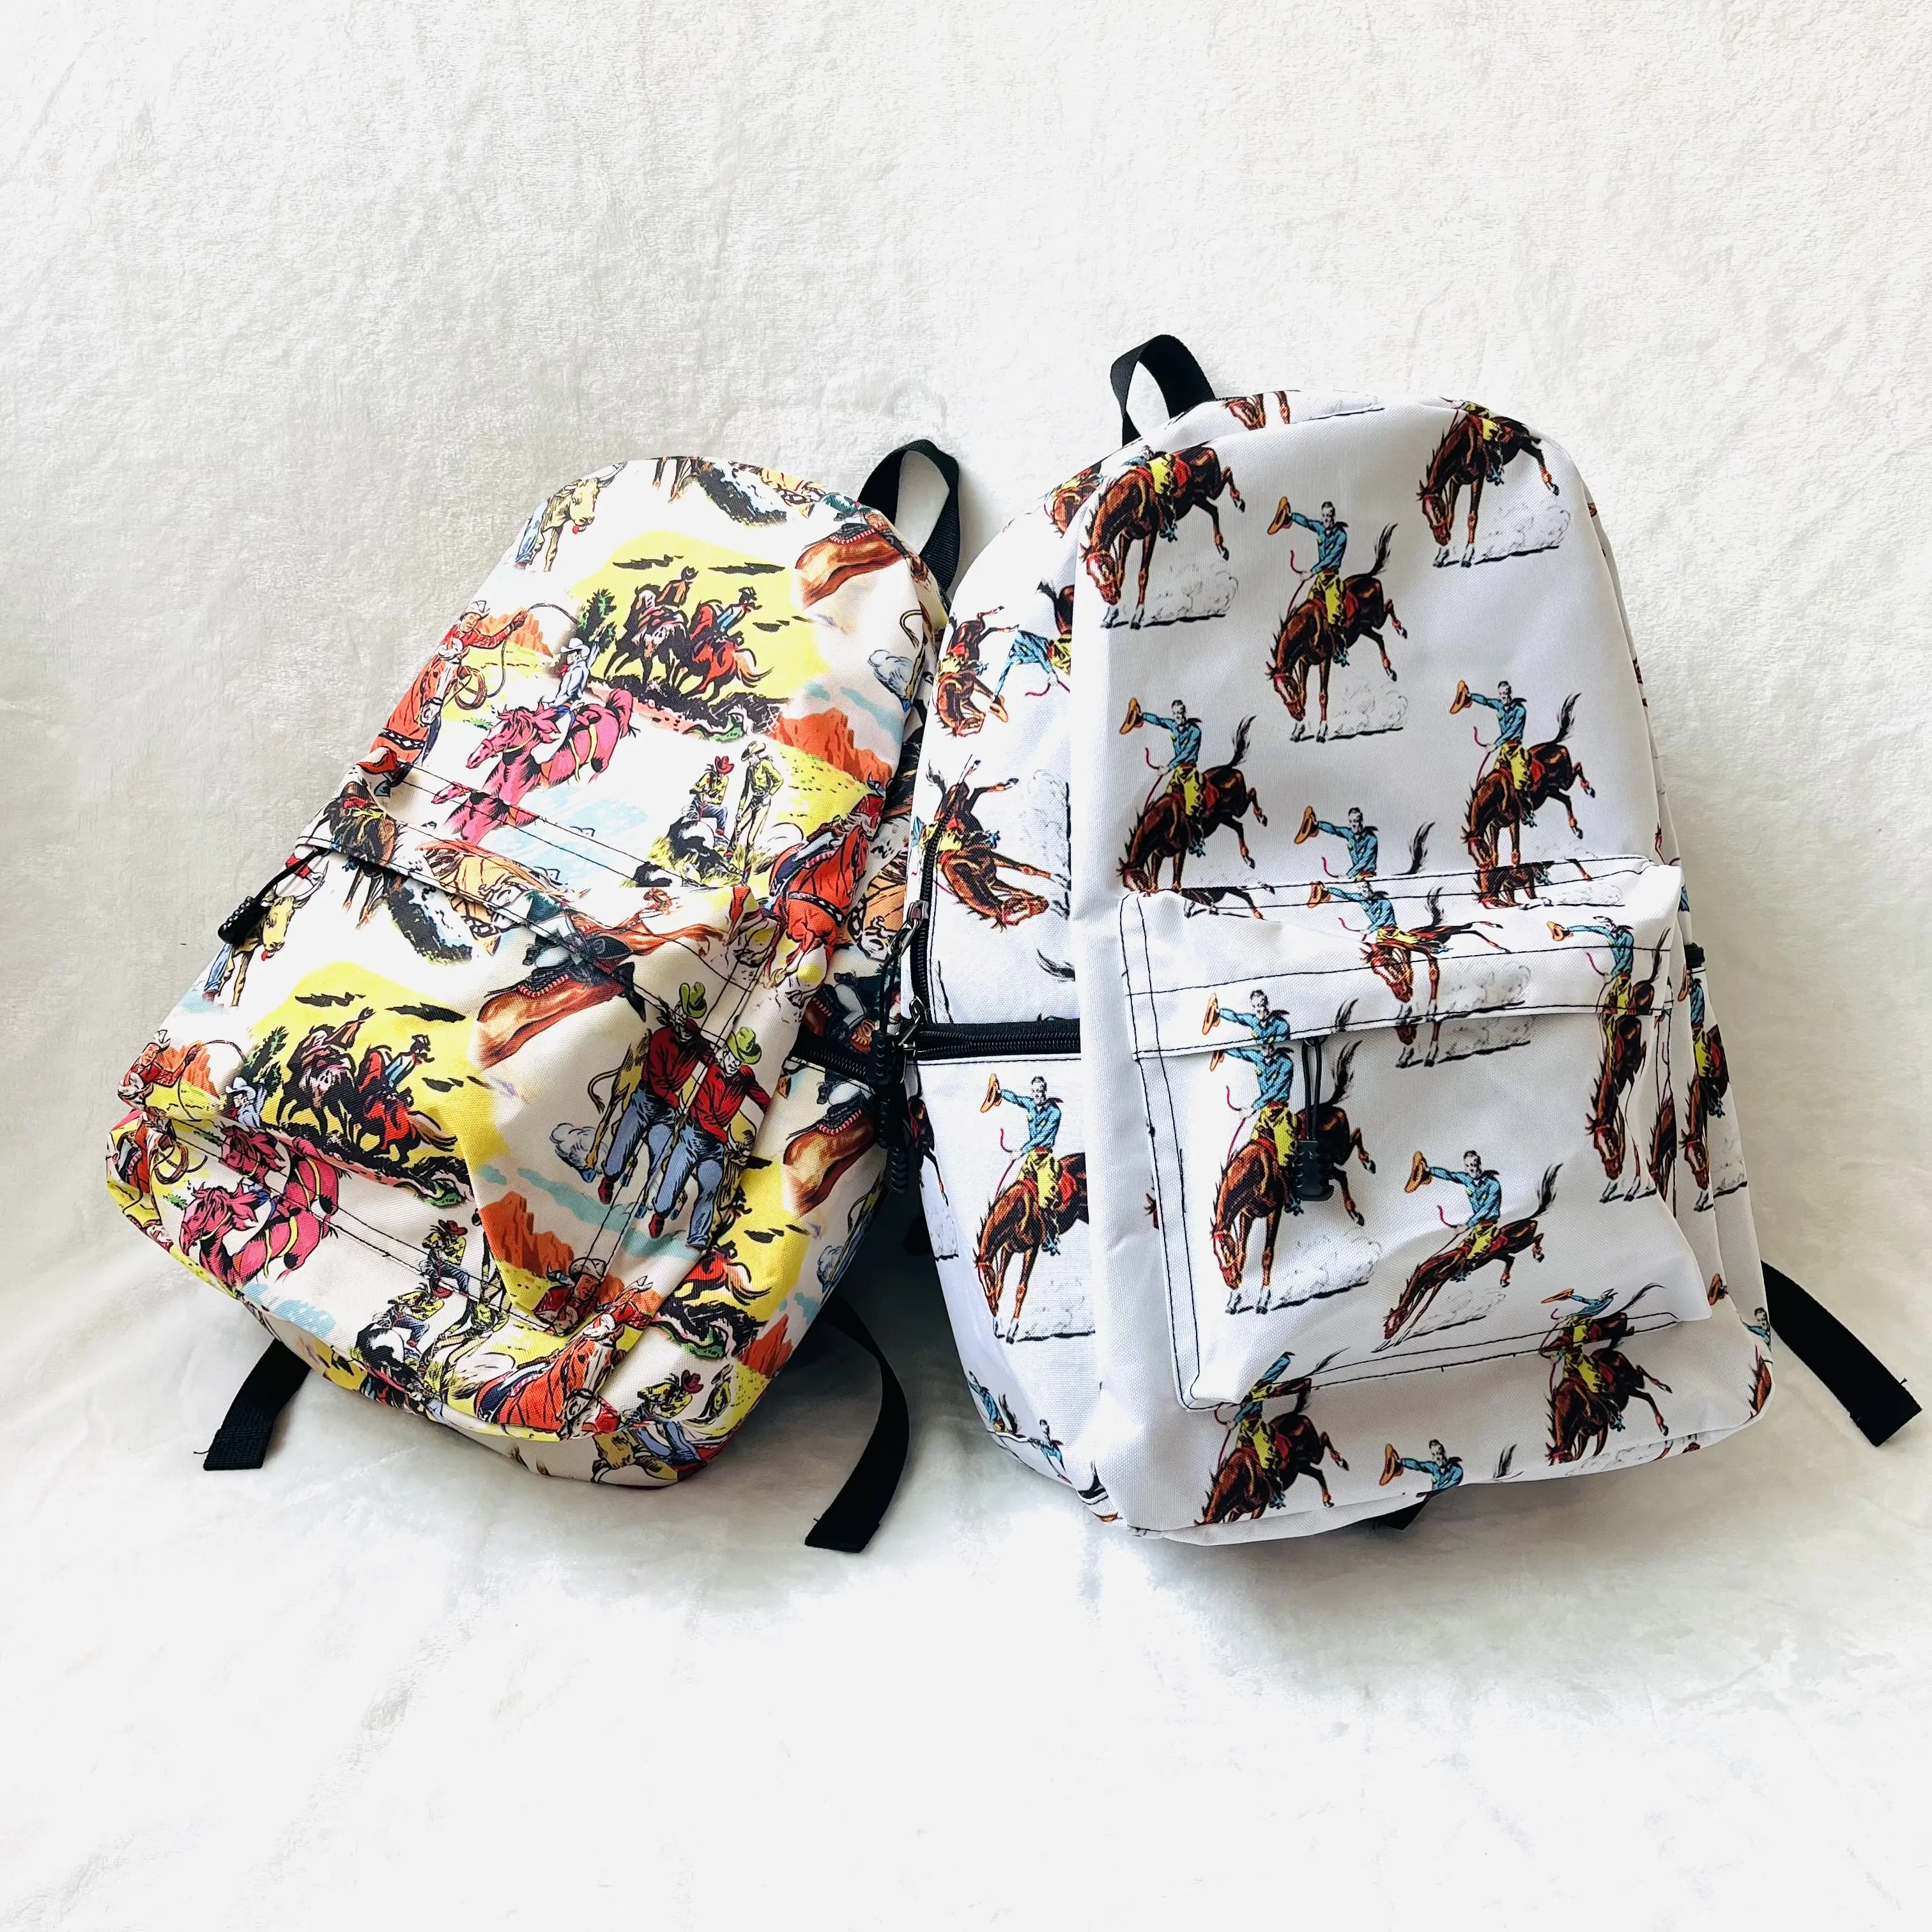 Оптовая продажа, ковбойский рюкзак в западном стиле, с рисунком коровы, студенческий рюкзак с ацтекским принтом, дорожная сумка, поддержка частной настройки